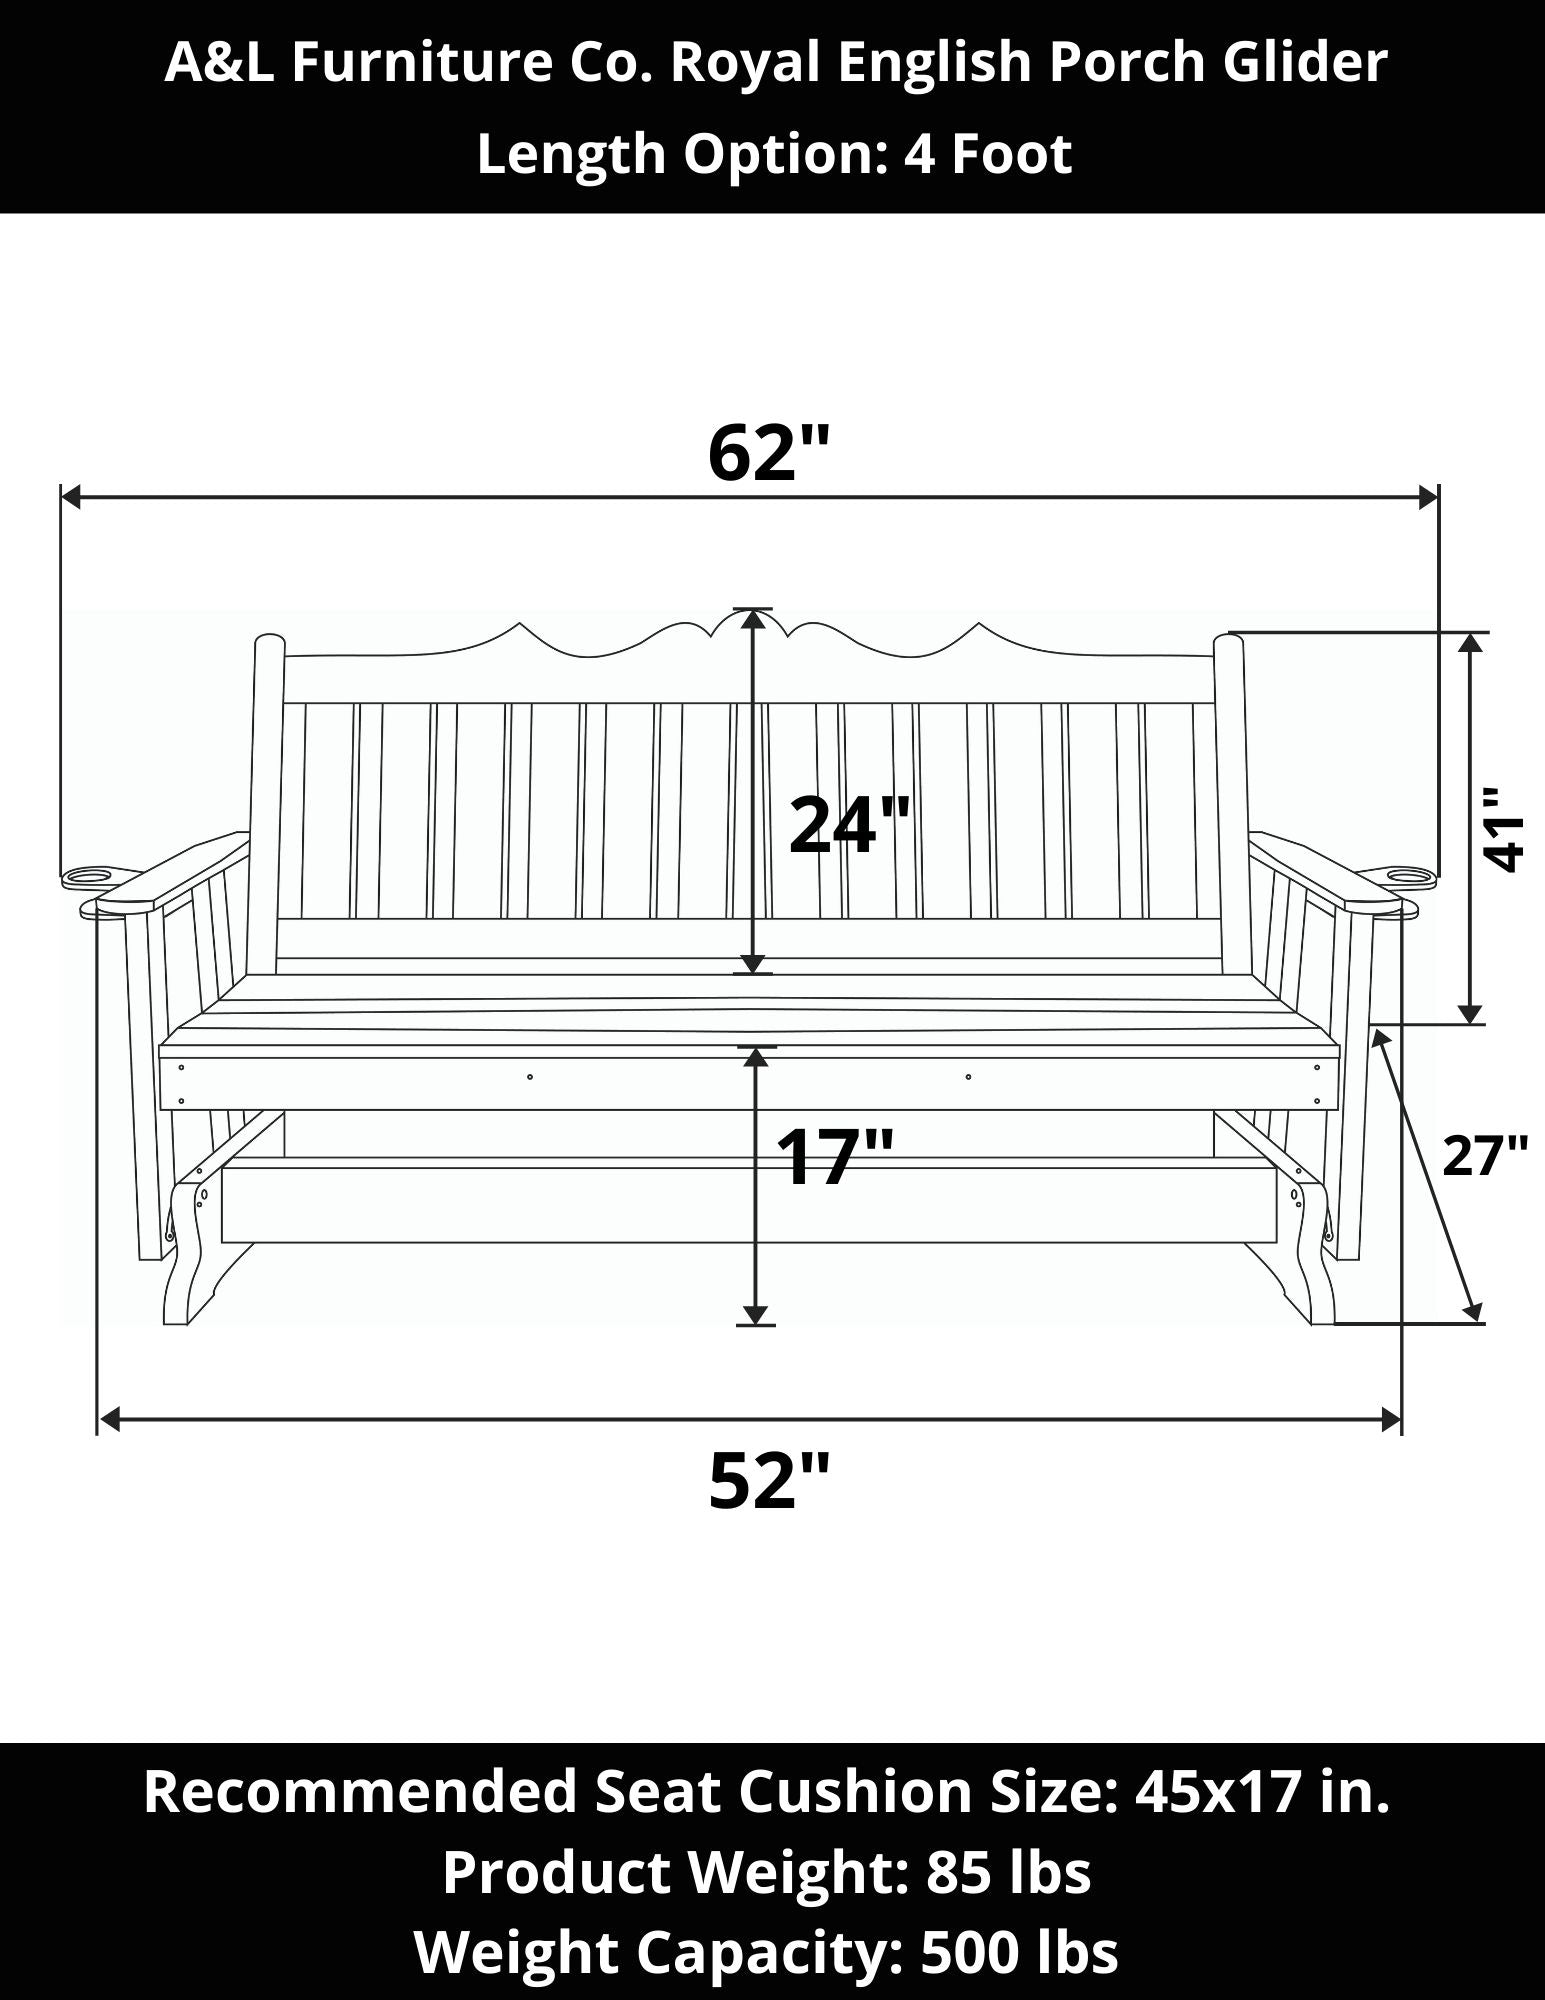 A&L Furniture Co. Royal English Porch Glider